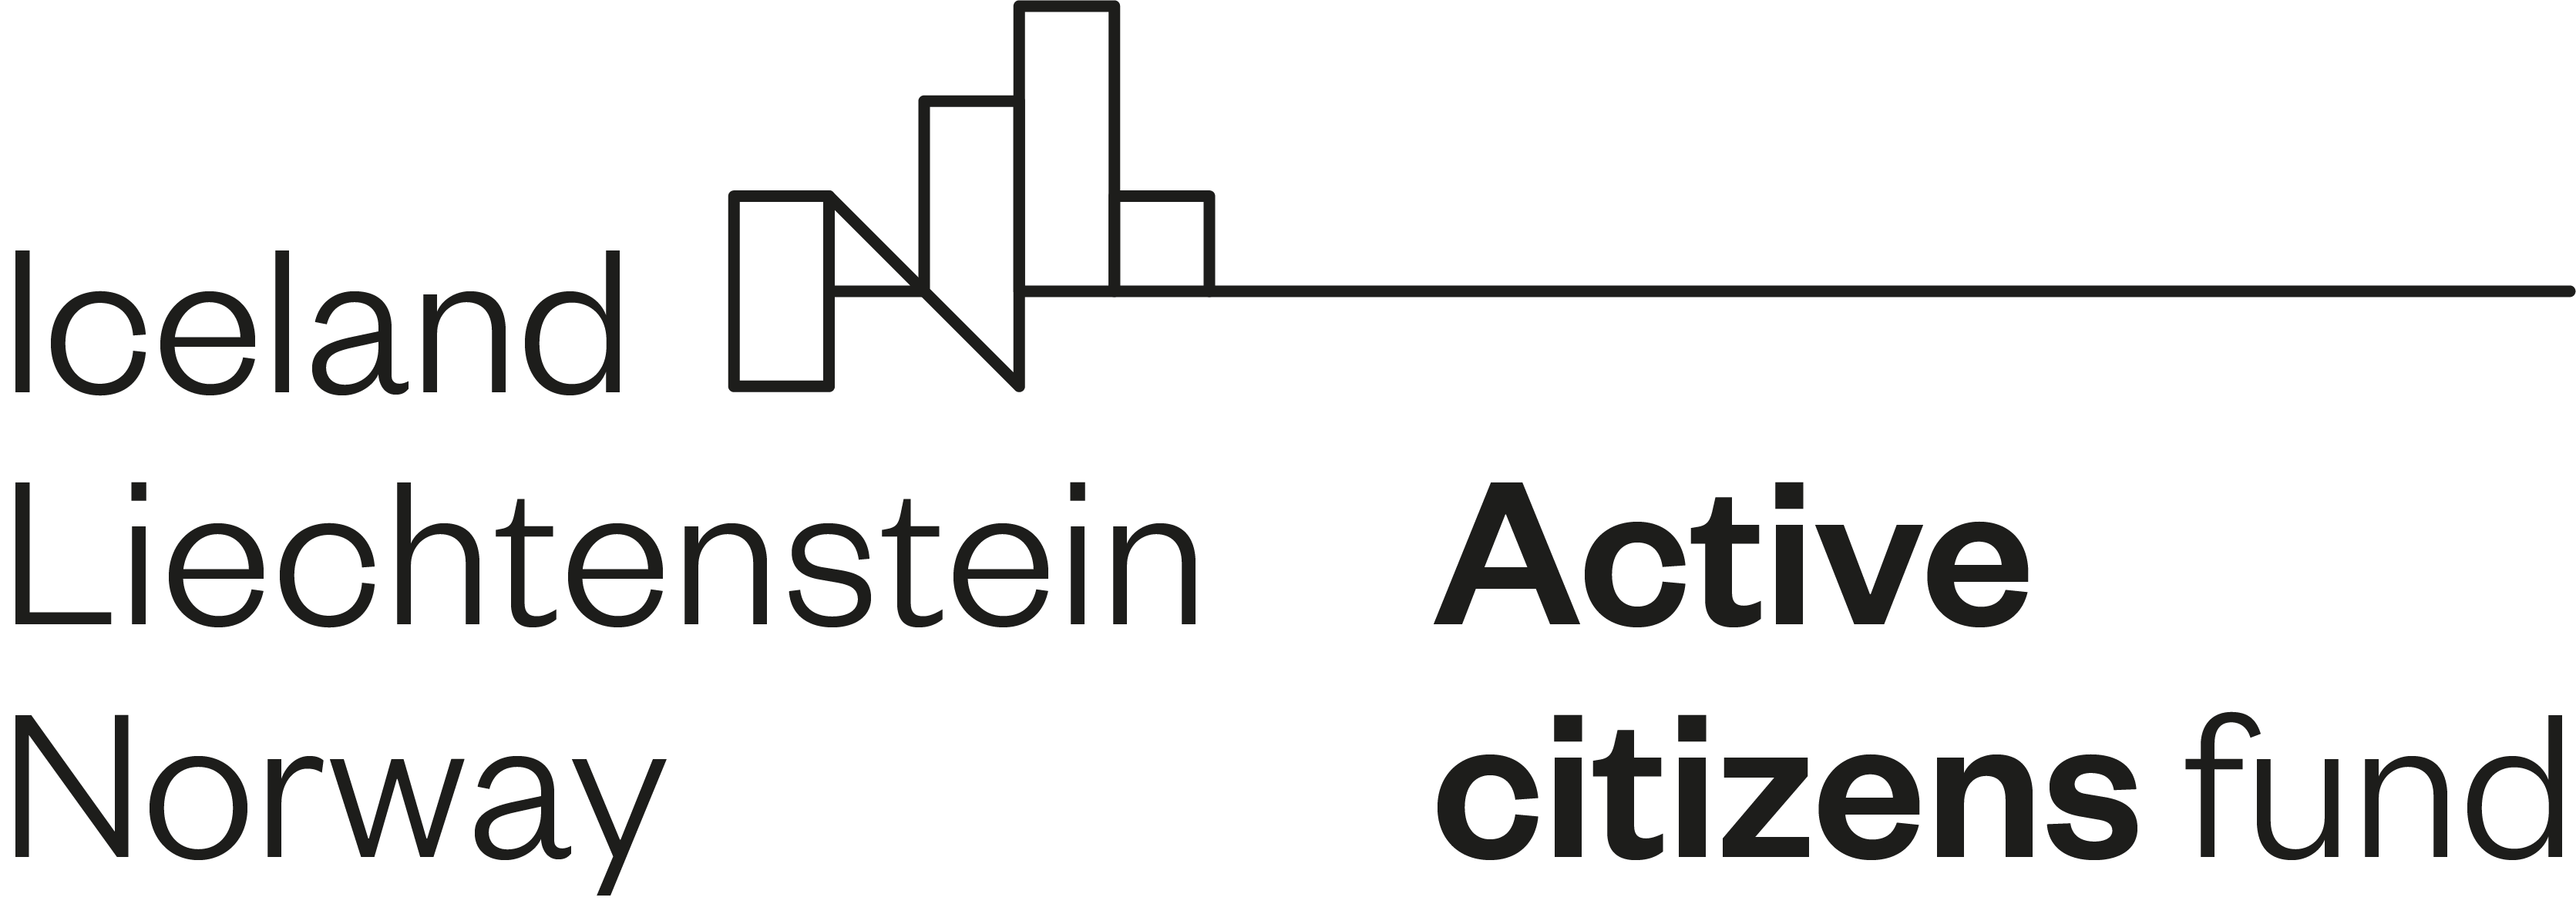 Active citizens